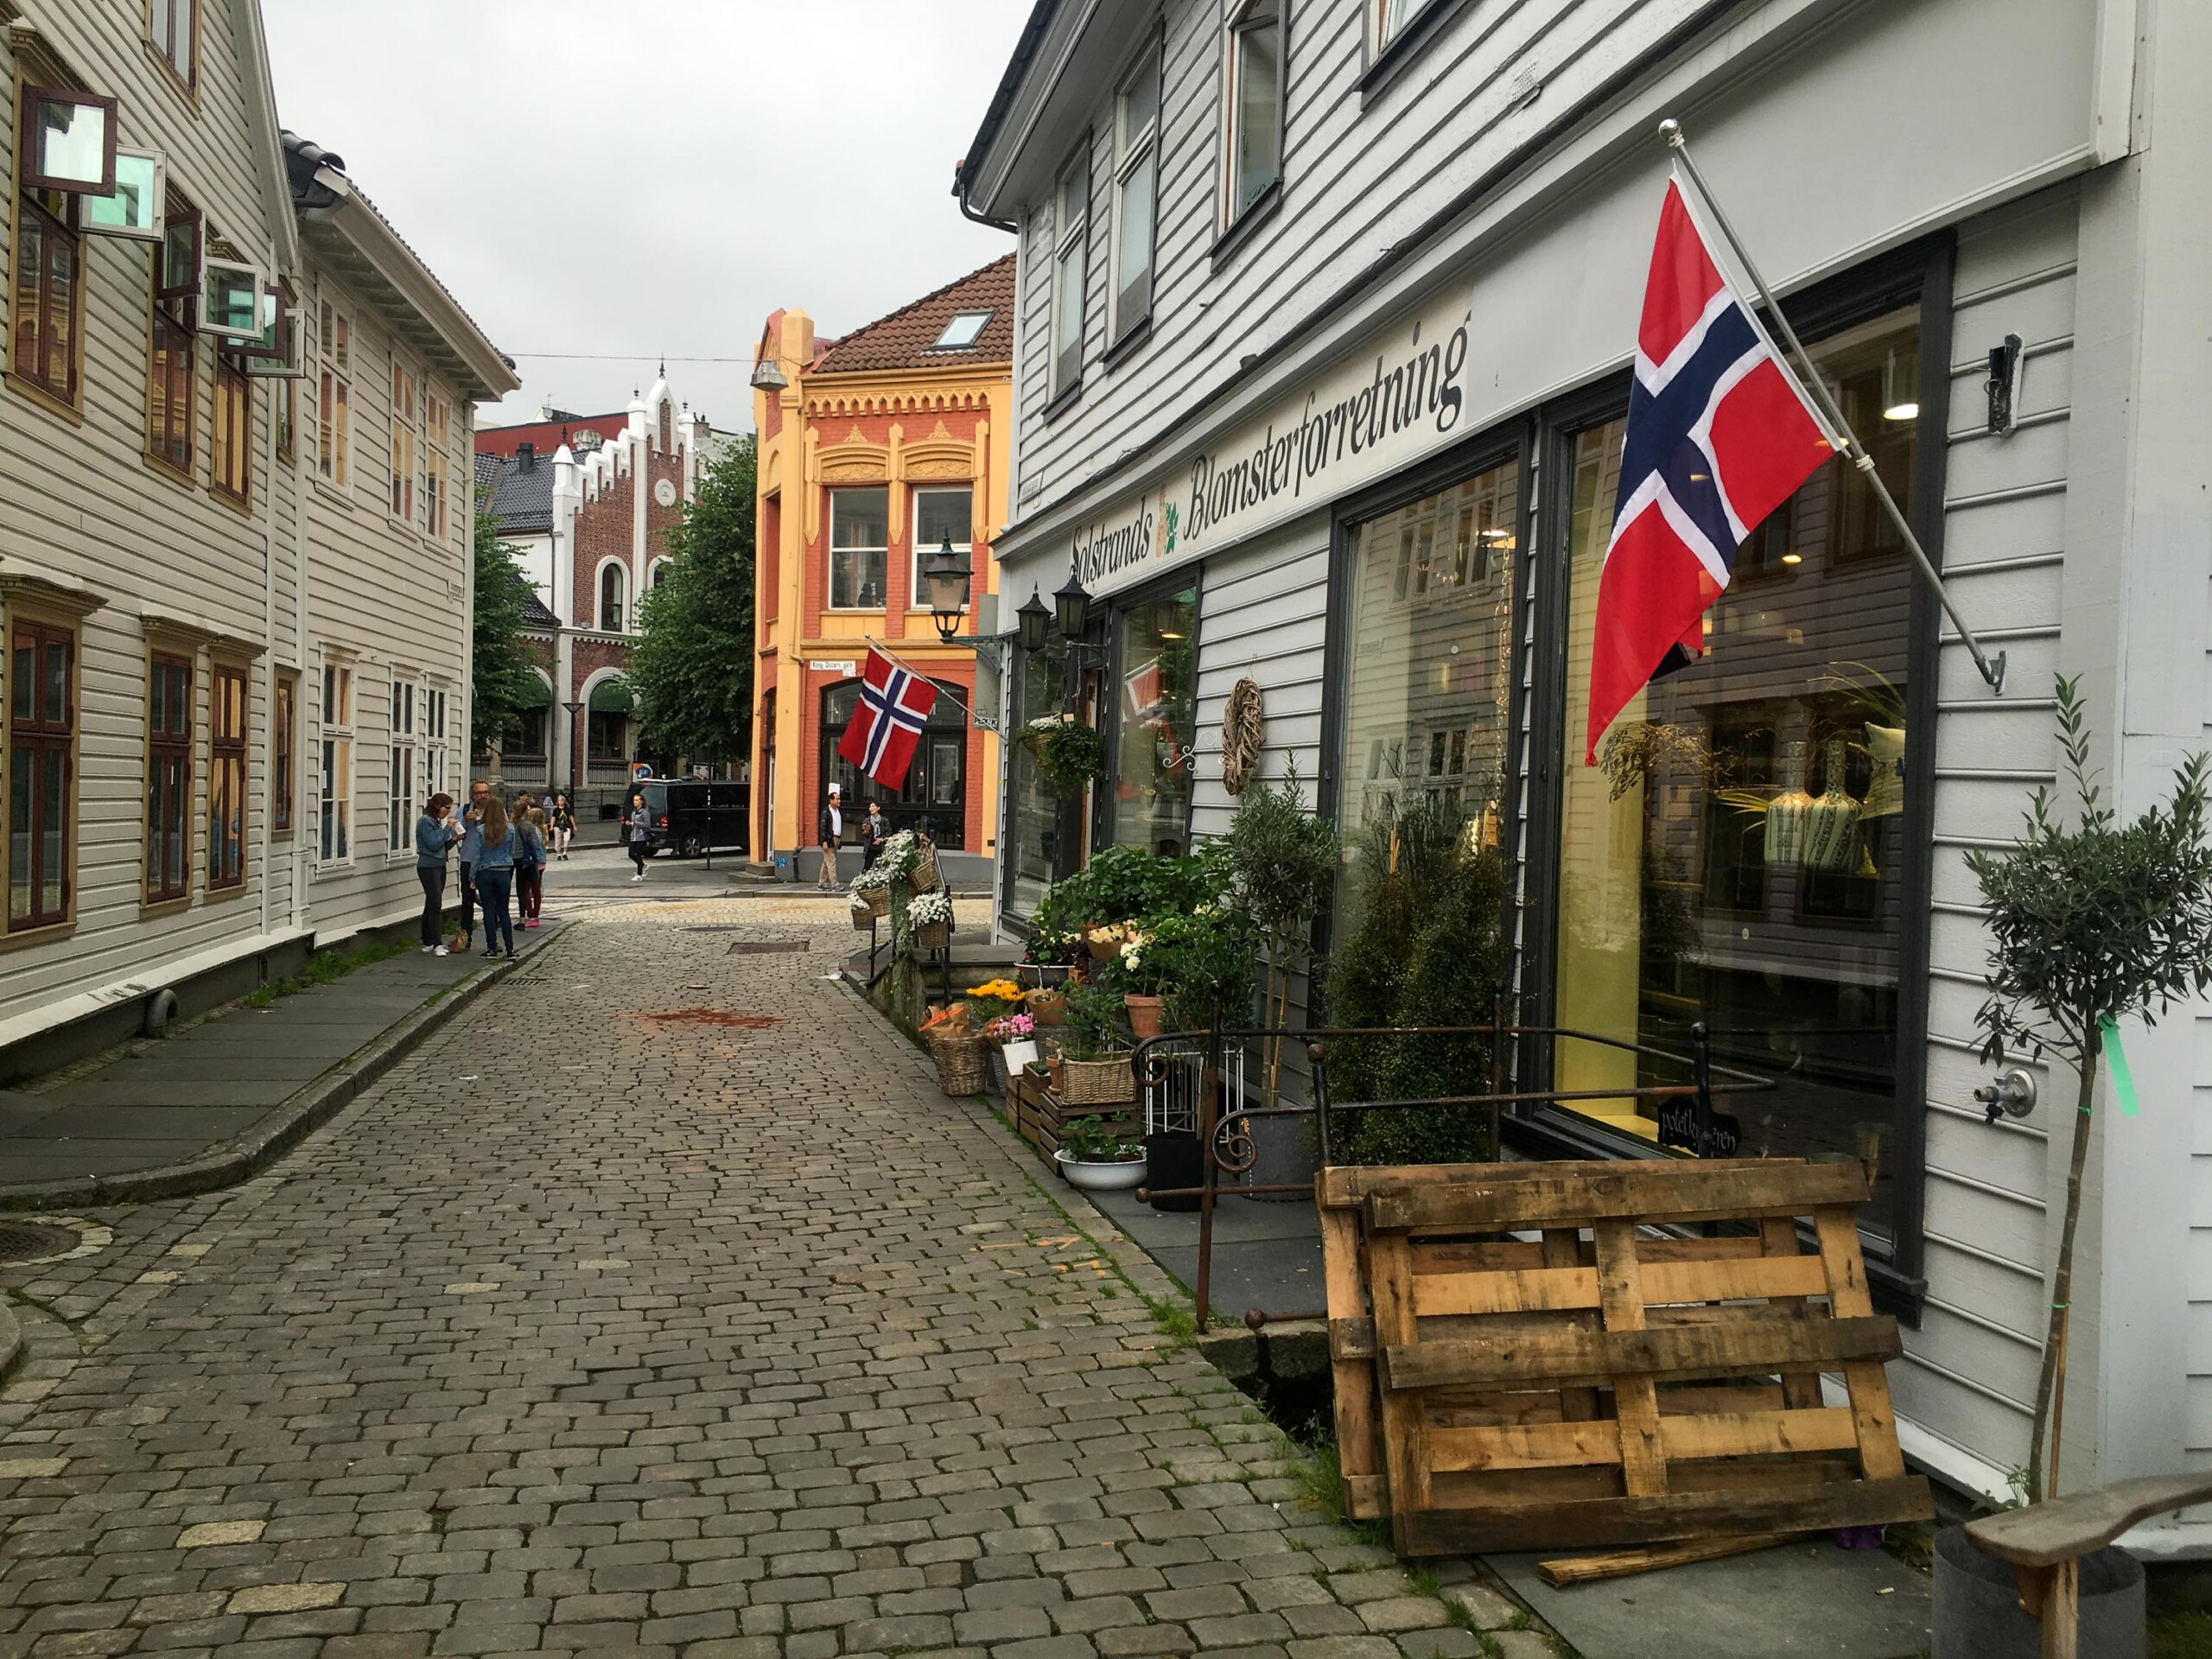 Ratgeber - Trinkgeld geben in Norwegen